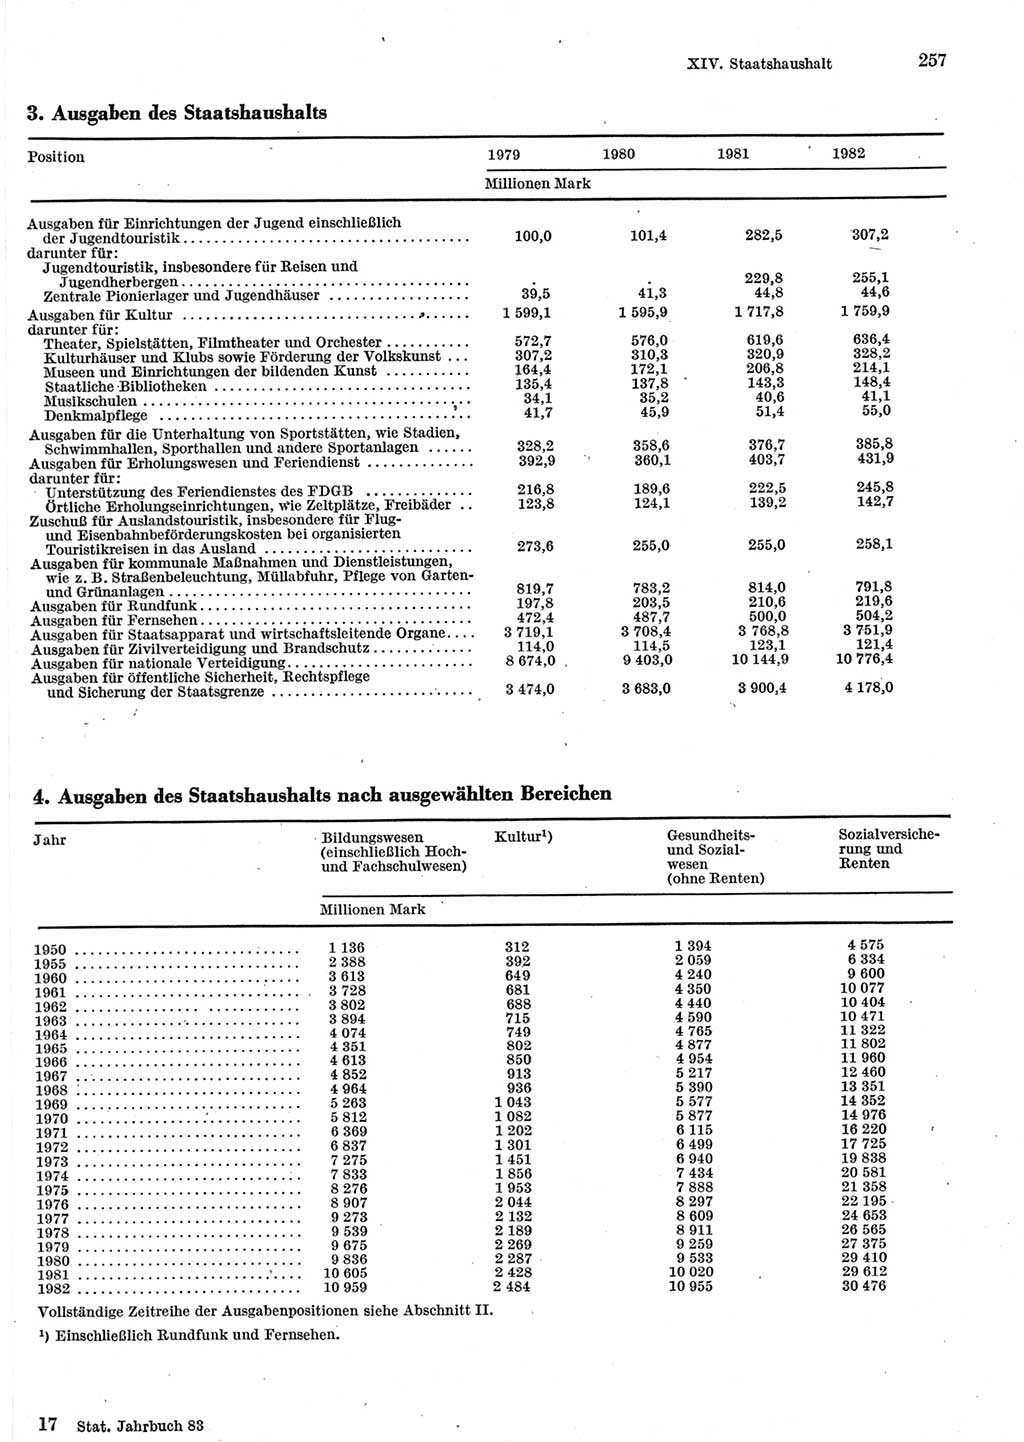 Statistisches Jahrbuch der Deutschen Demokratischen Republik (DDR) 1983, Seite 257 (Stat. Jb. DDR 1983, S. 257)